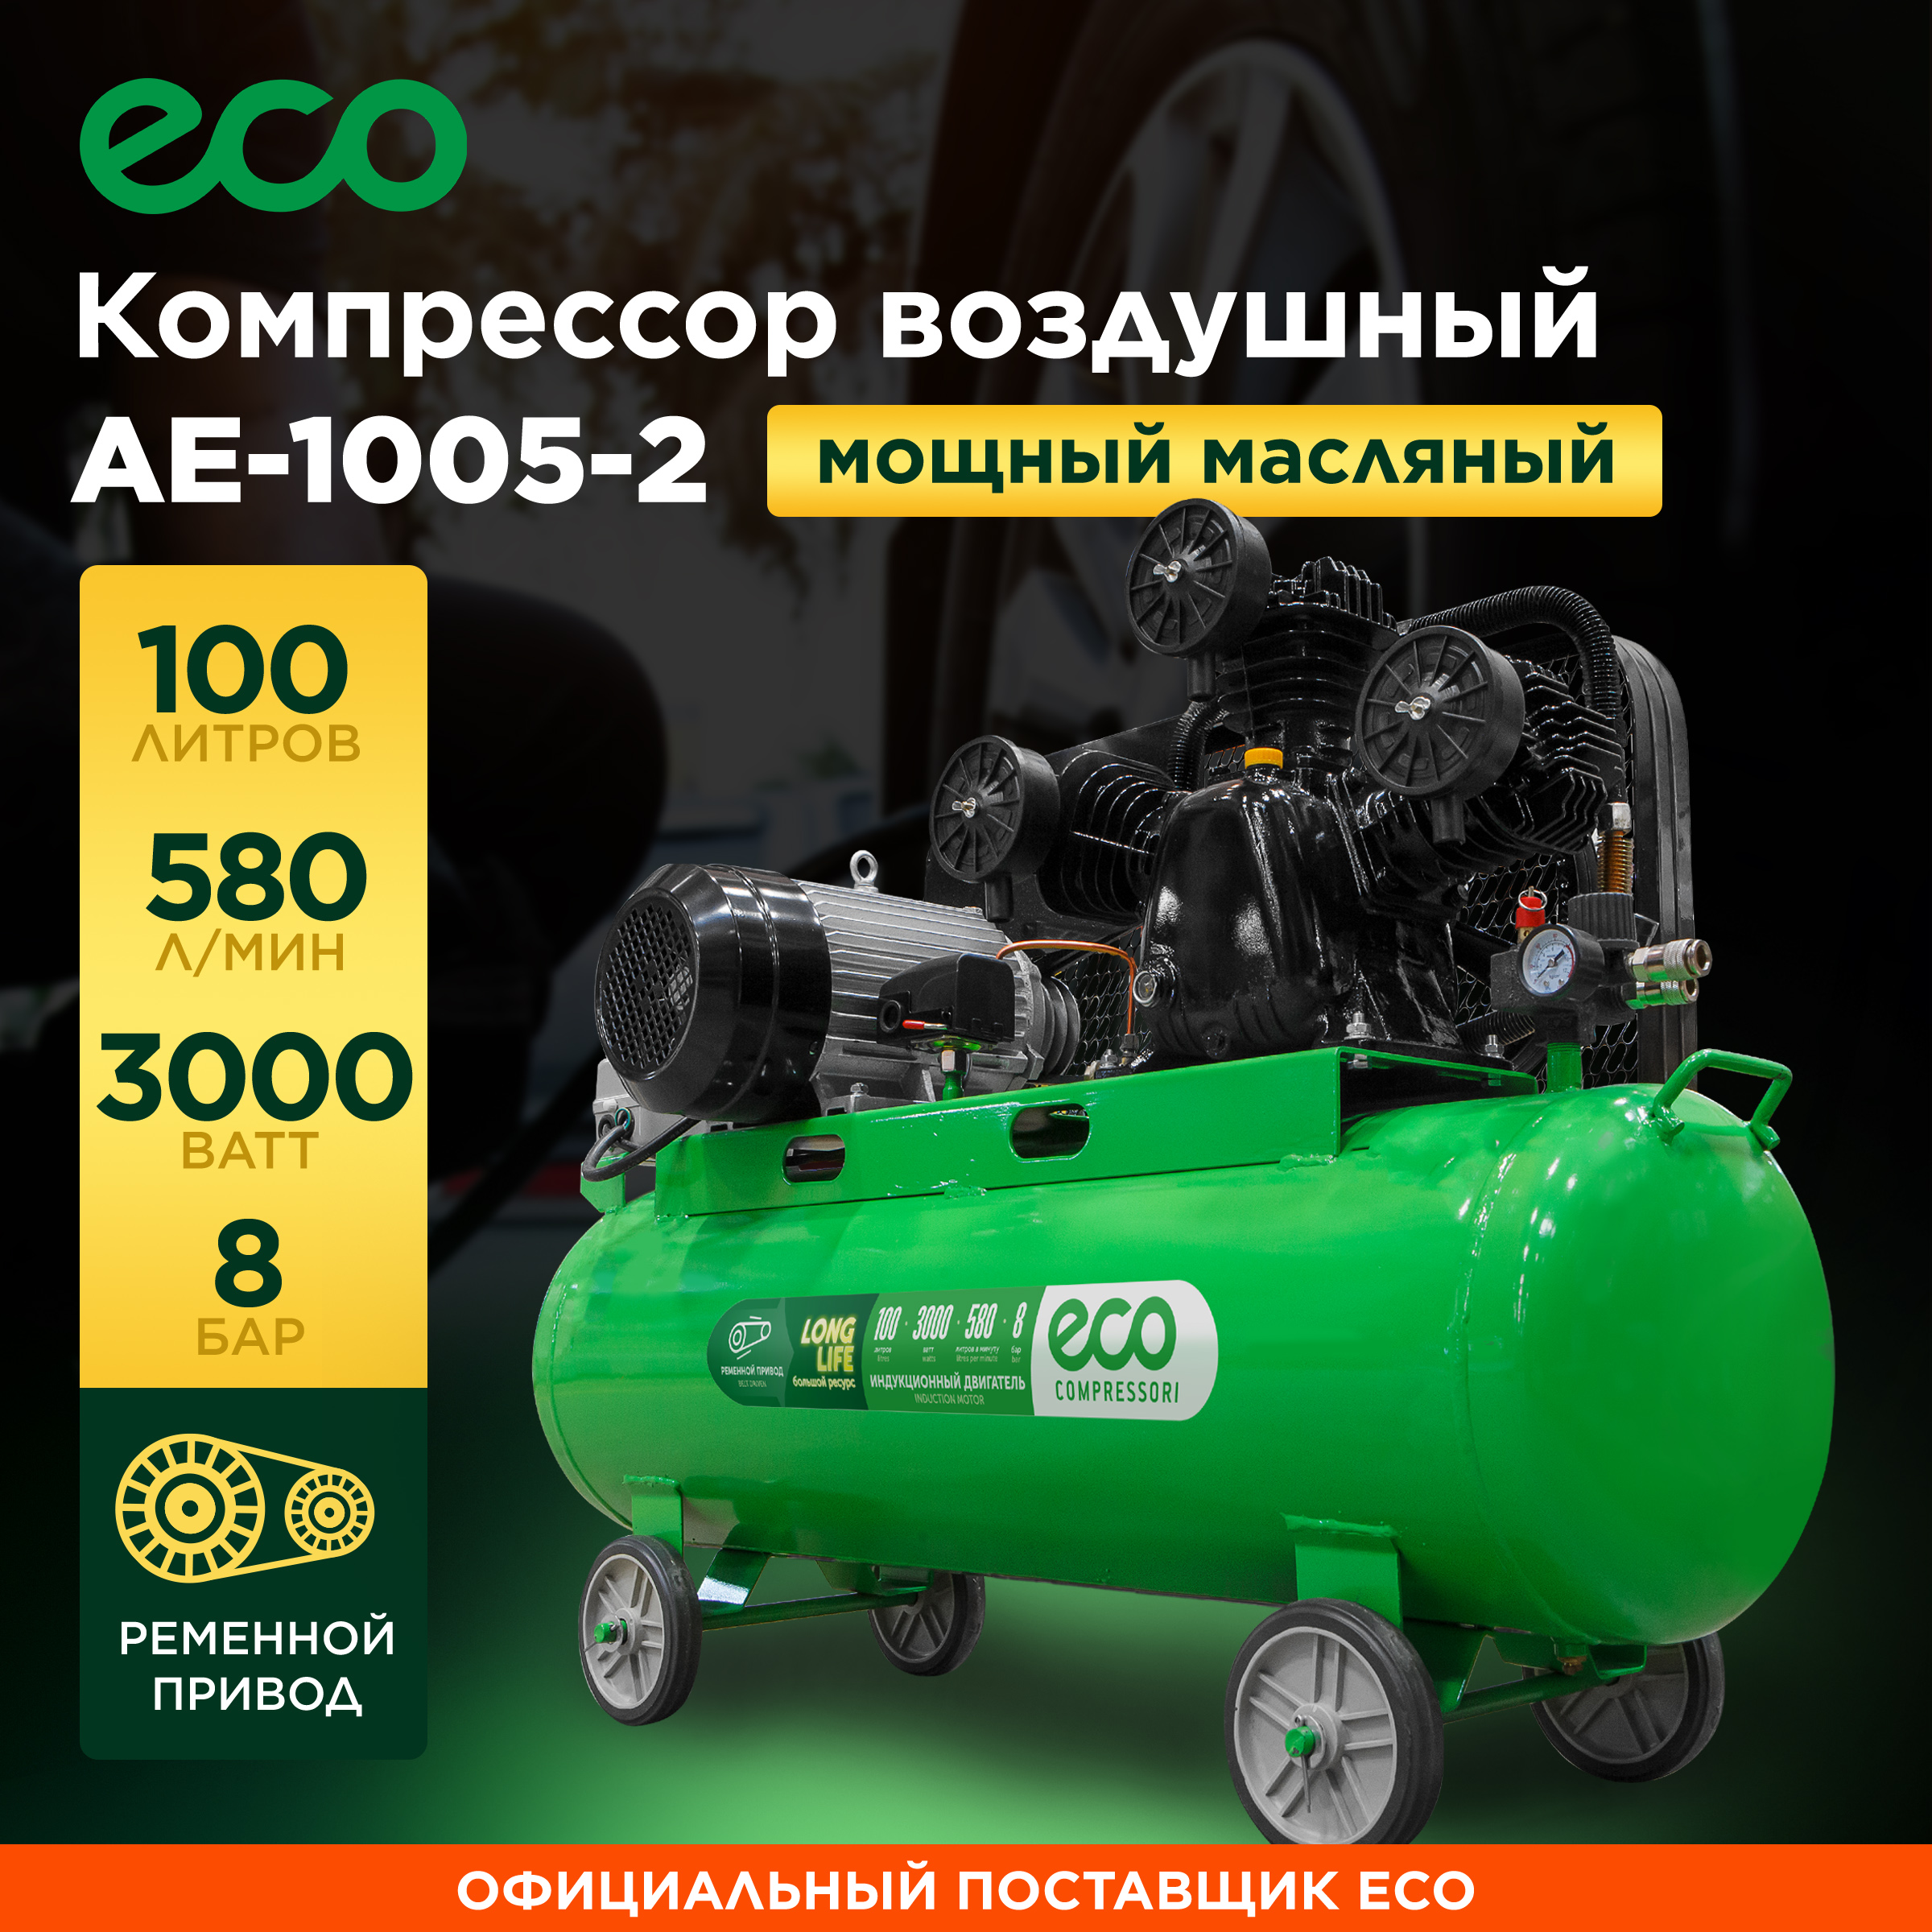 Компрессор воздушный масляный ECO AE-1005-2 компрессор воздушный масляный eco ae 1005 в1